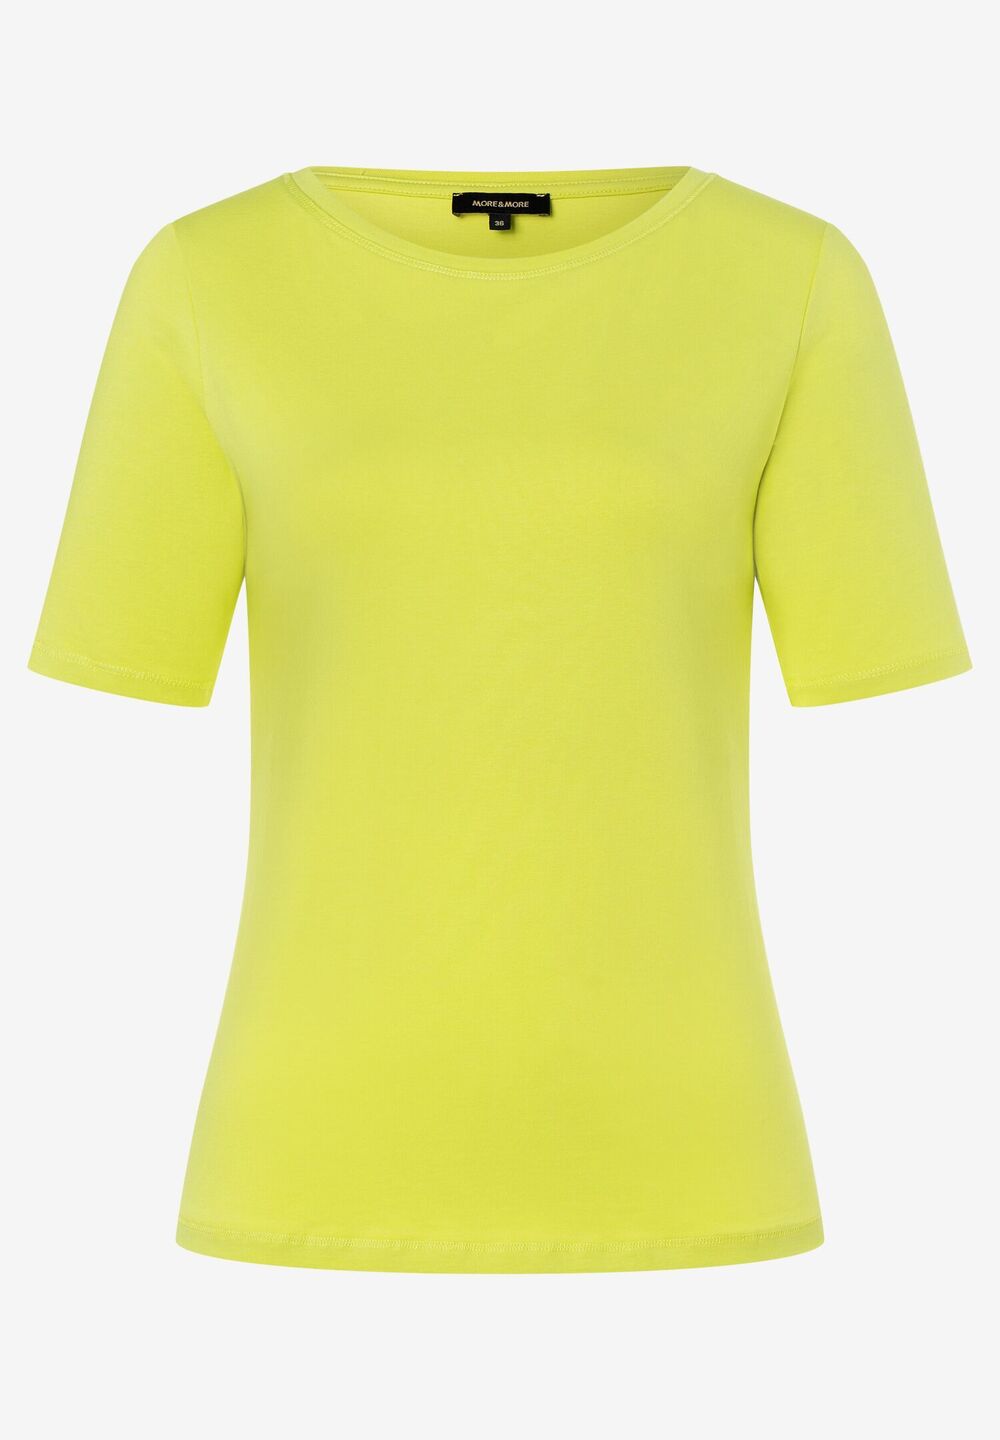 T-Shirt, U-Boot Ausschnitt, lime green, Sommer-Kollektion, gelbRückansicht